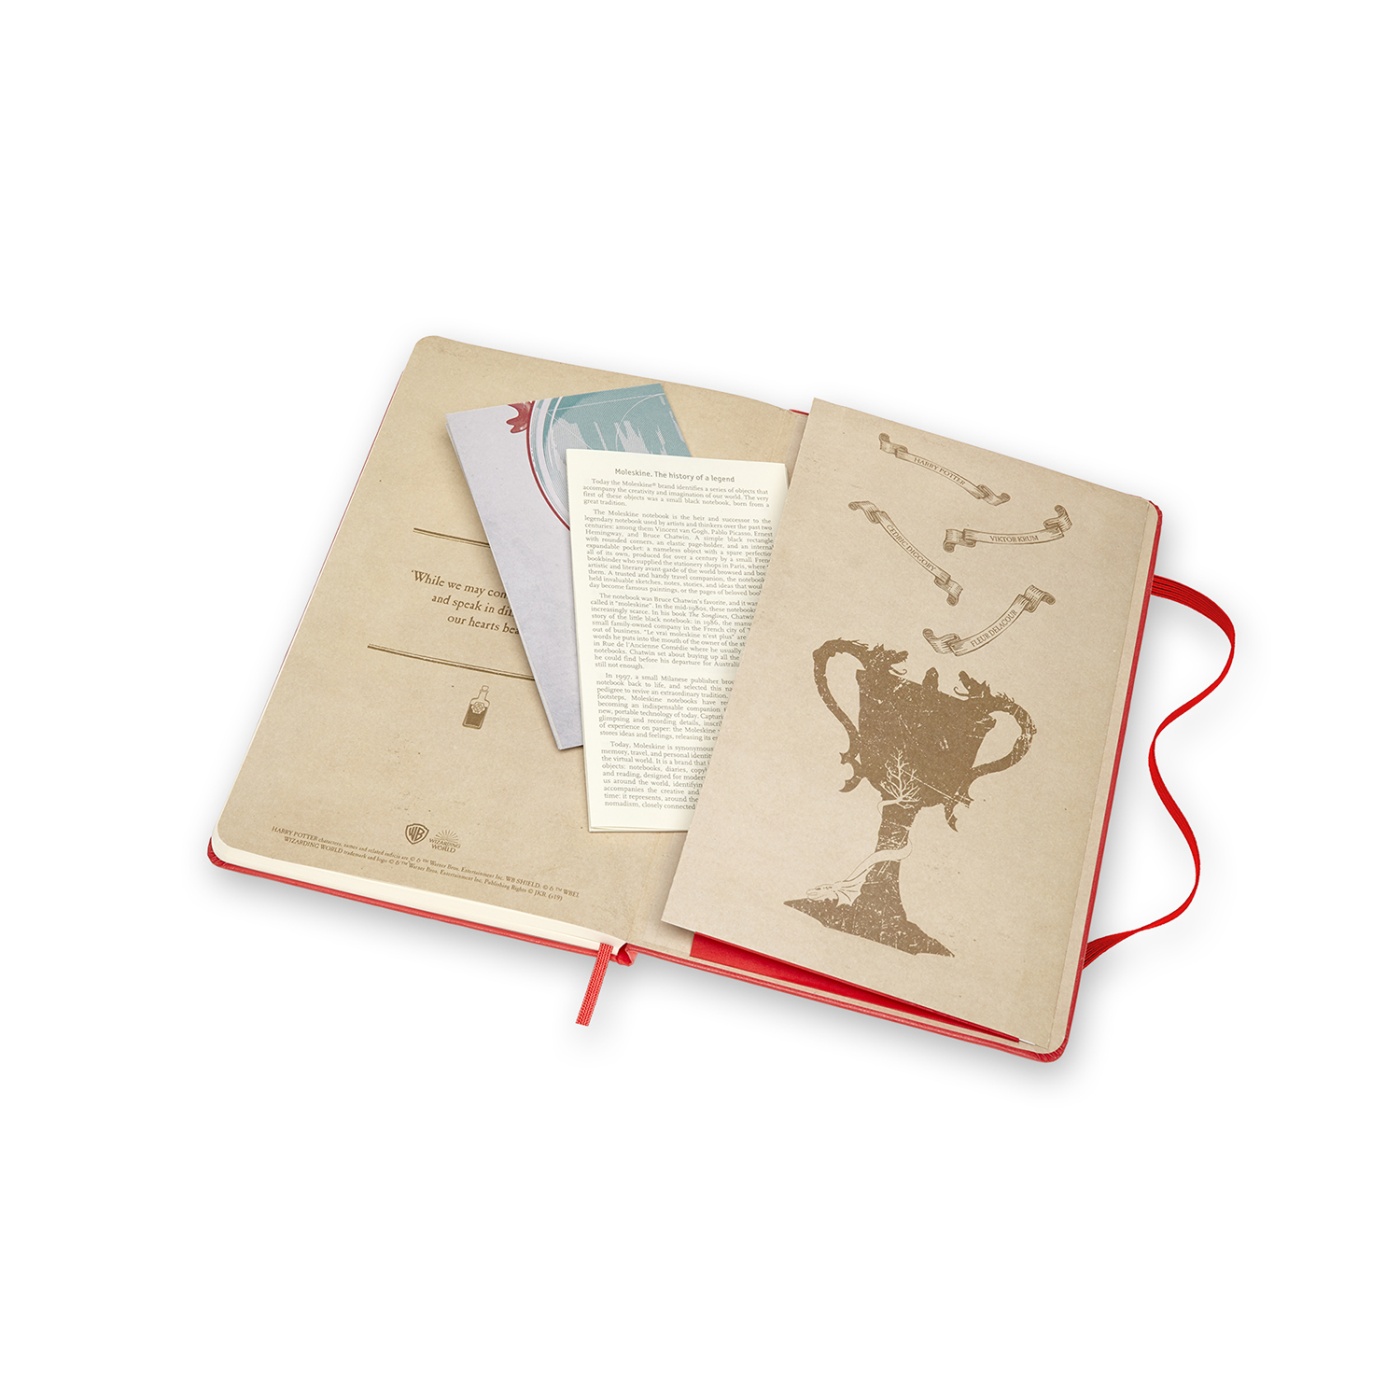 Hardcover Large Harry Potter Red ryhmässä Paperit ja Lehtiöt / Kirjoitus ja muistiinpanot / Muistikirjat @ Pen Store (100467)